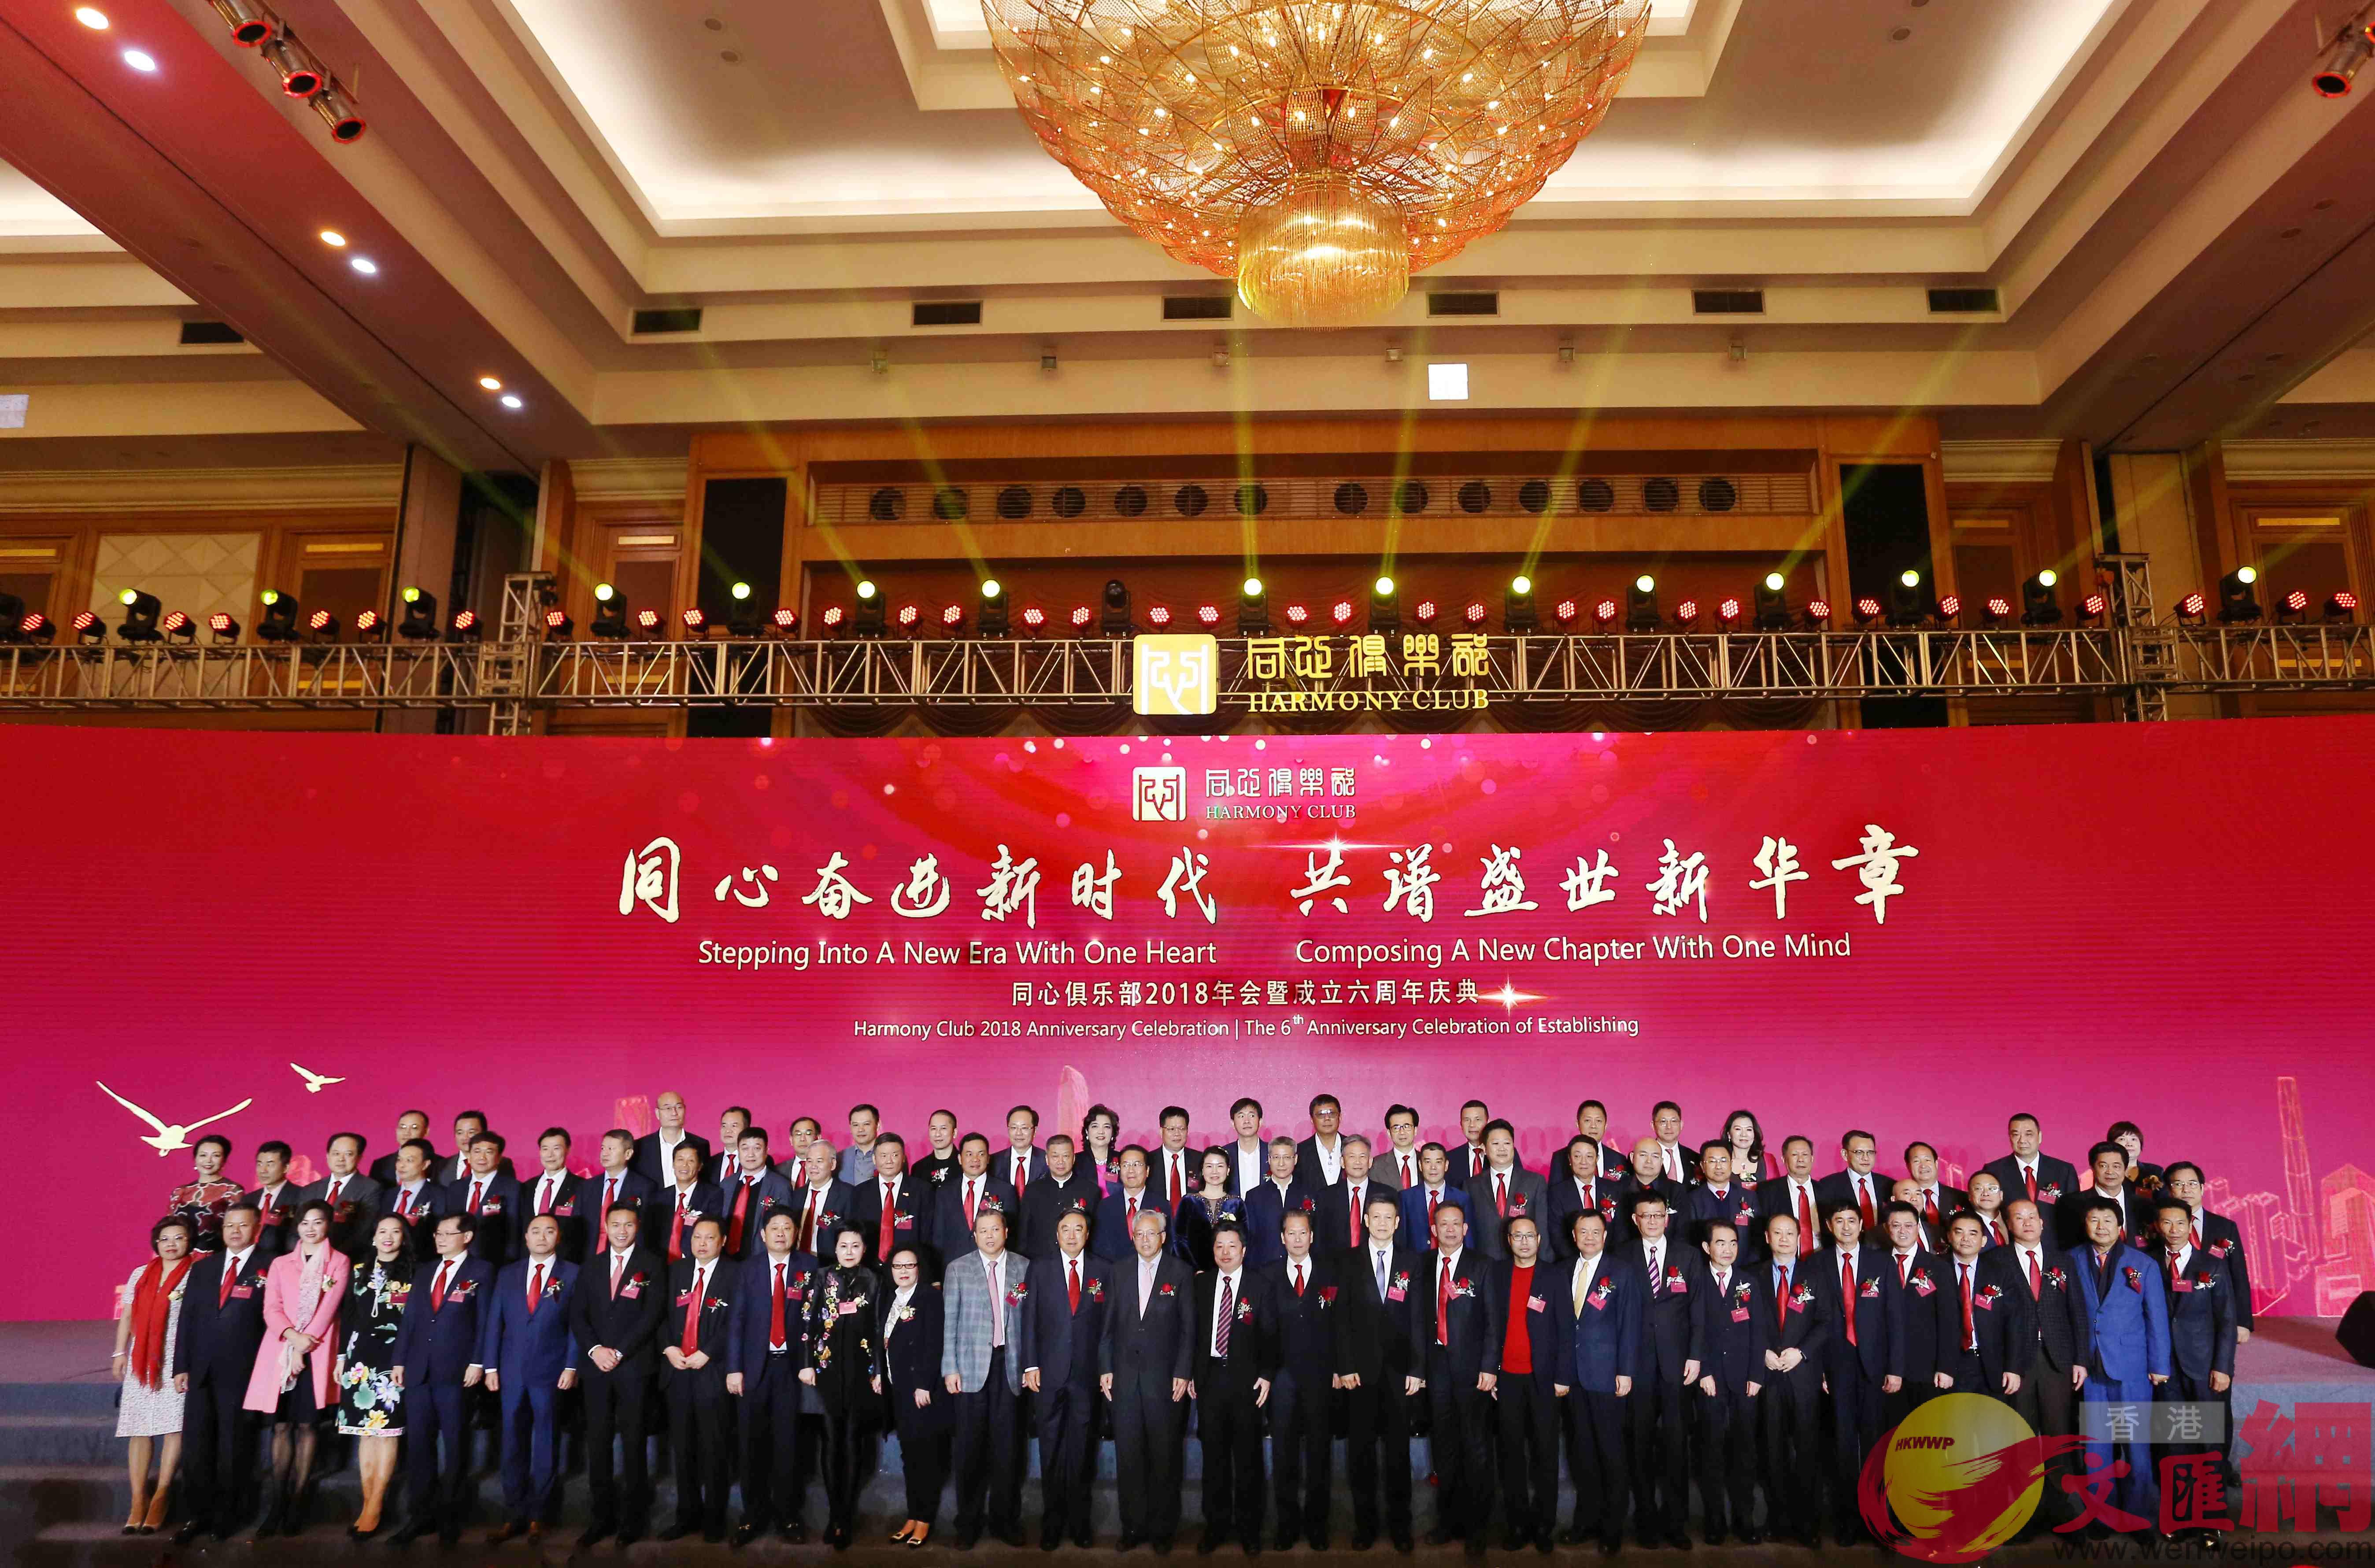 12月18日A同心俱樂部2018年會暨成立六周年慶典在雄壯的國歌聲中在深圳五洲賓館隆重舉行C]記者熊君慧攝^